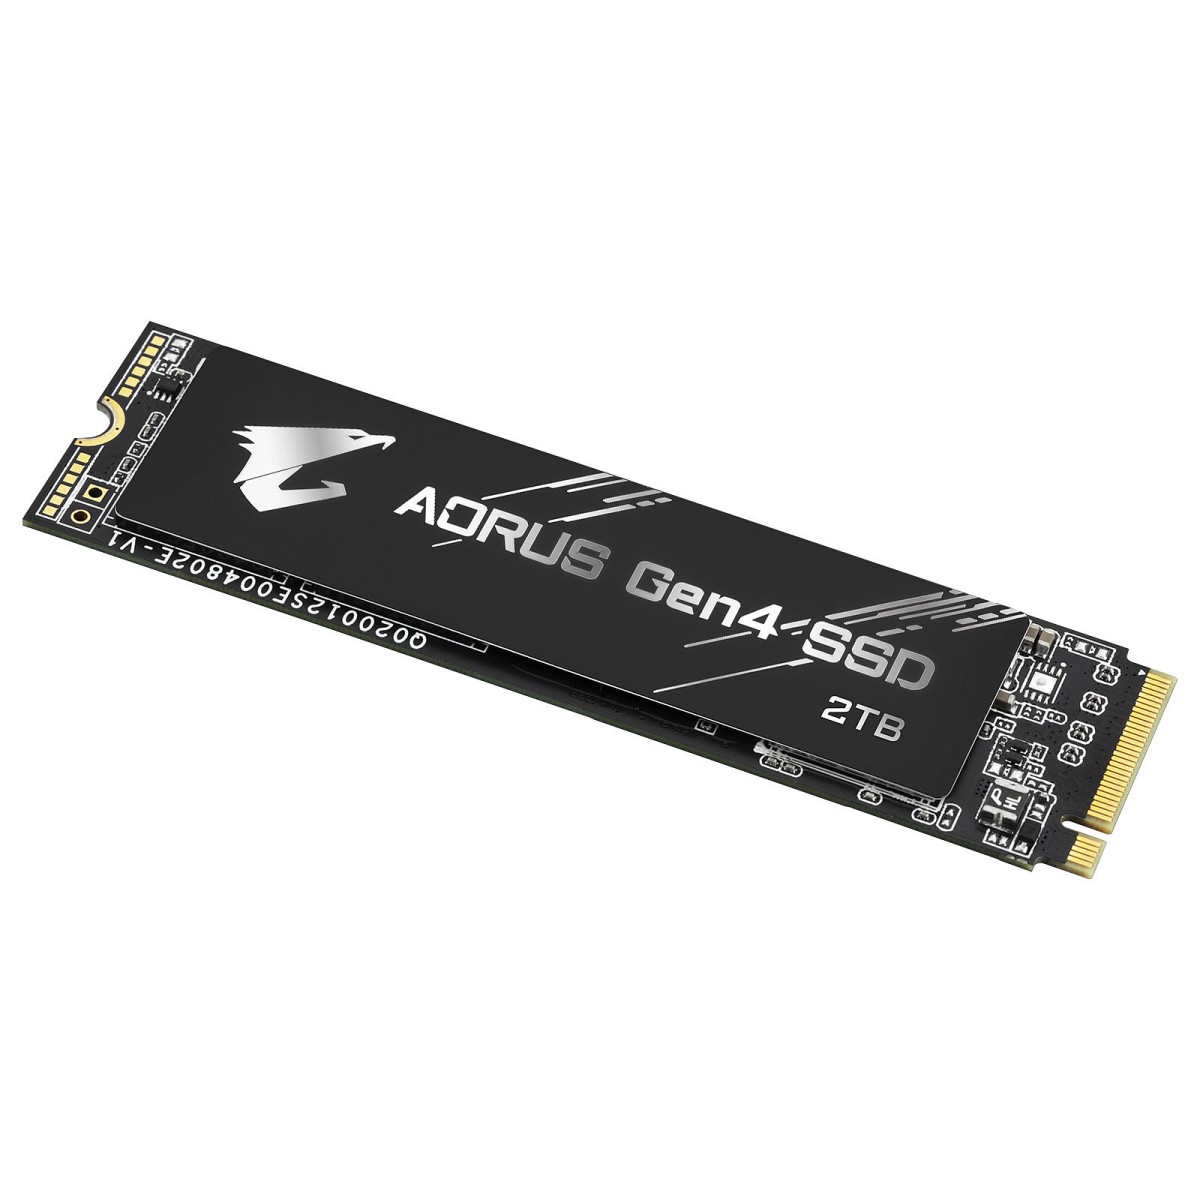 Aorus Gen4 SSD